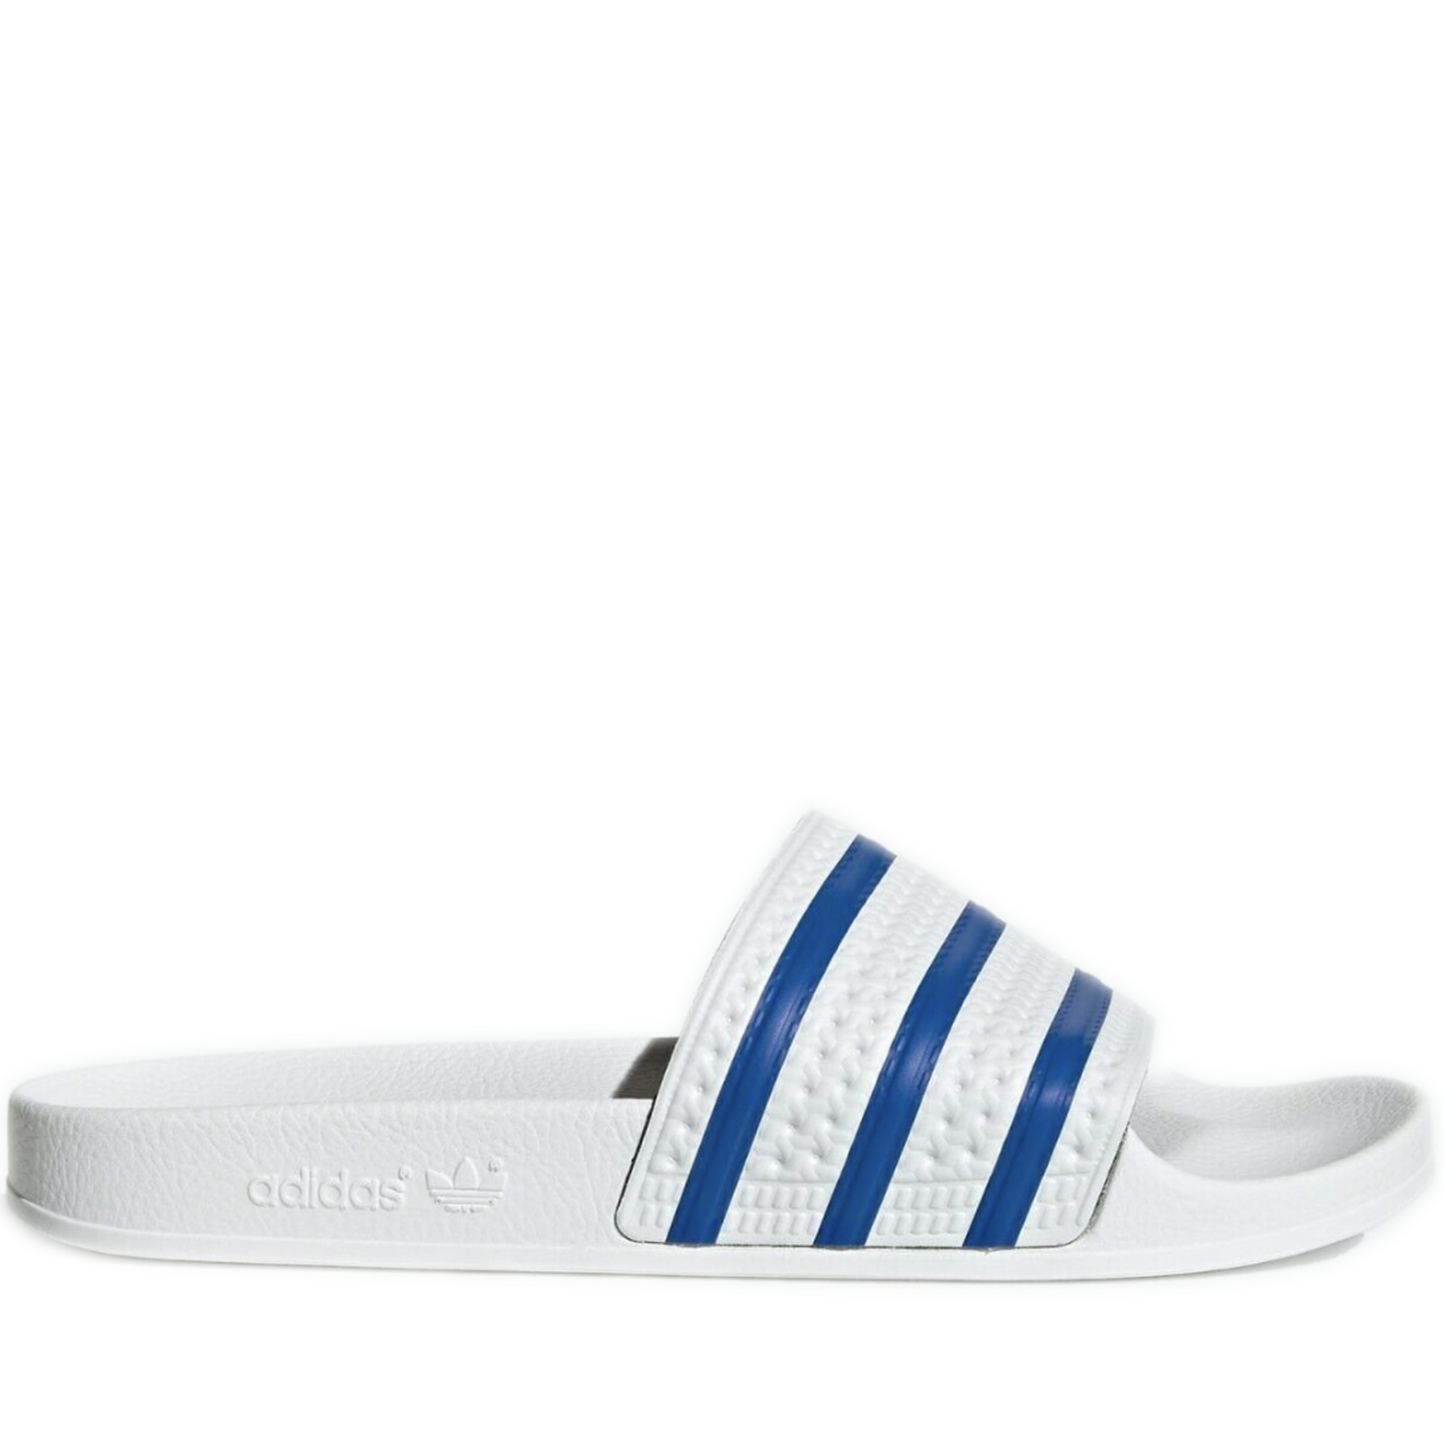 Men's Adidas Adilette Slides - White/ Blue